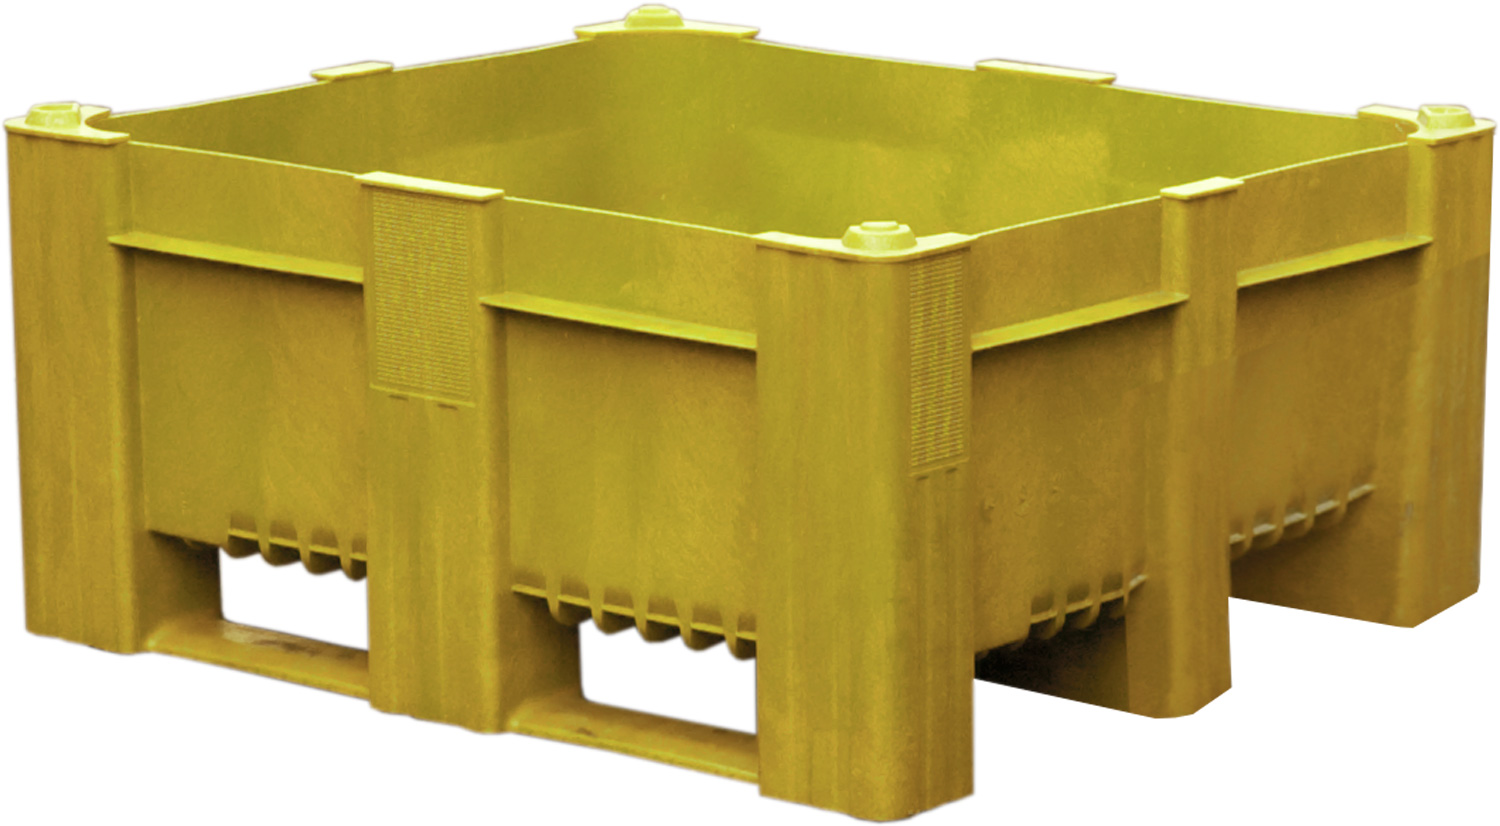 BoxPallet сплошной желтый 11-100-LA (540) Полиэтилен низкого давления (HDPE)